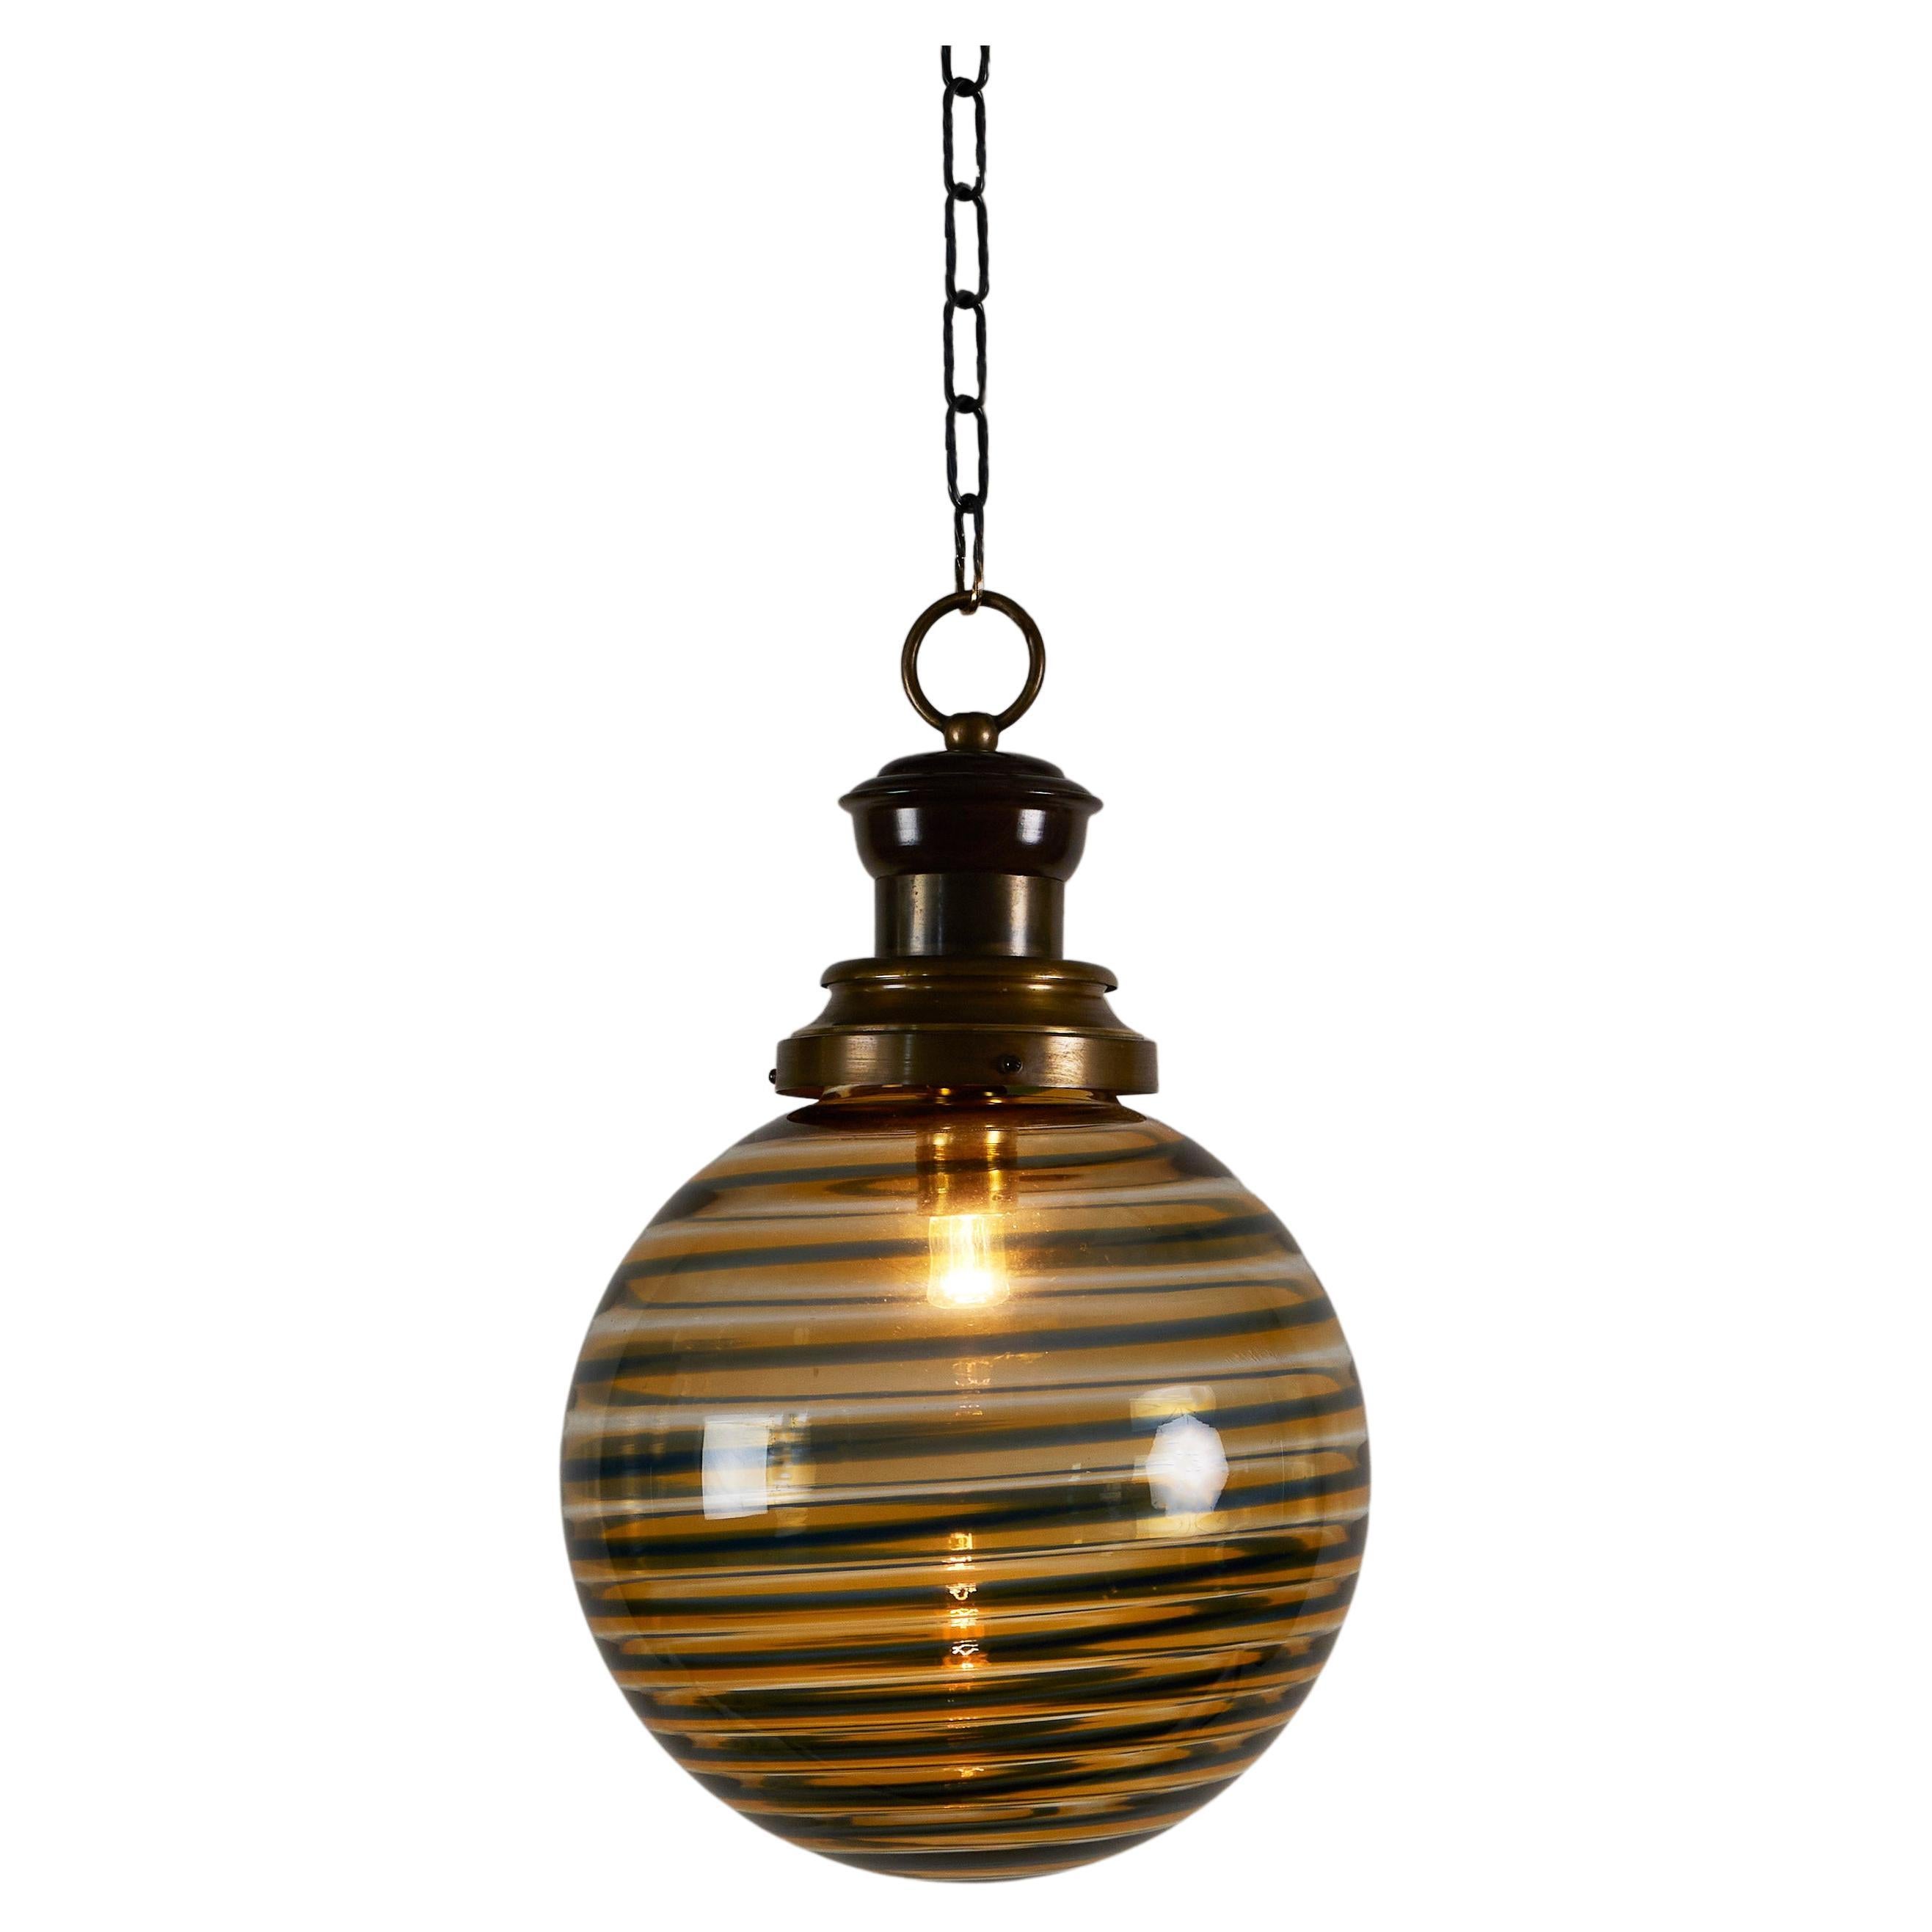 Italian 1970s Murano amber and black swirl ball pendant